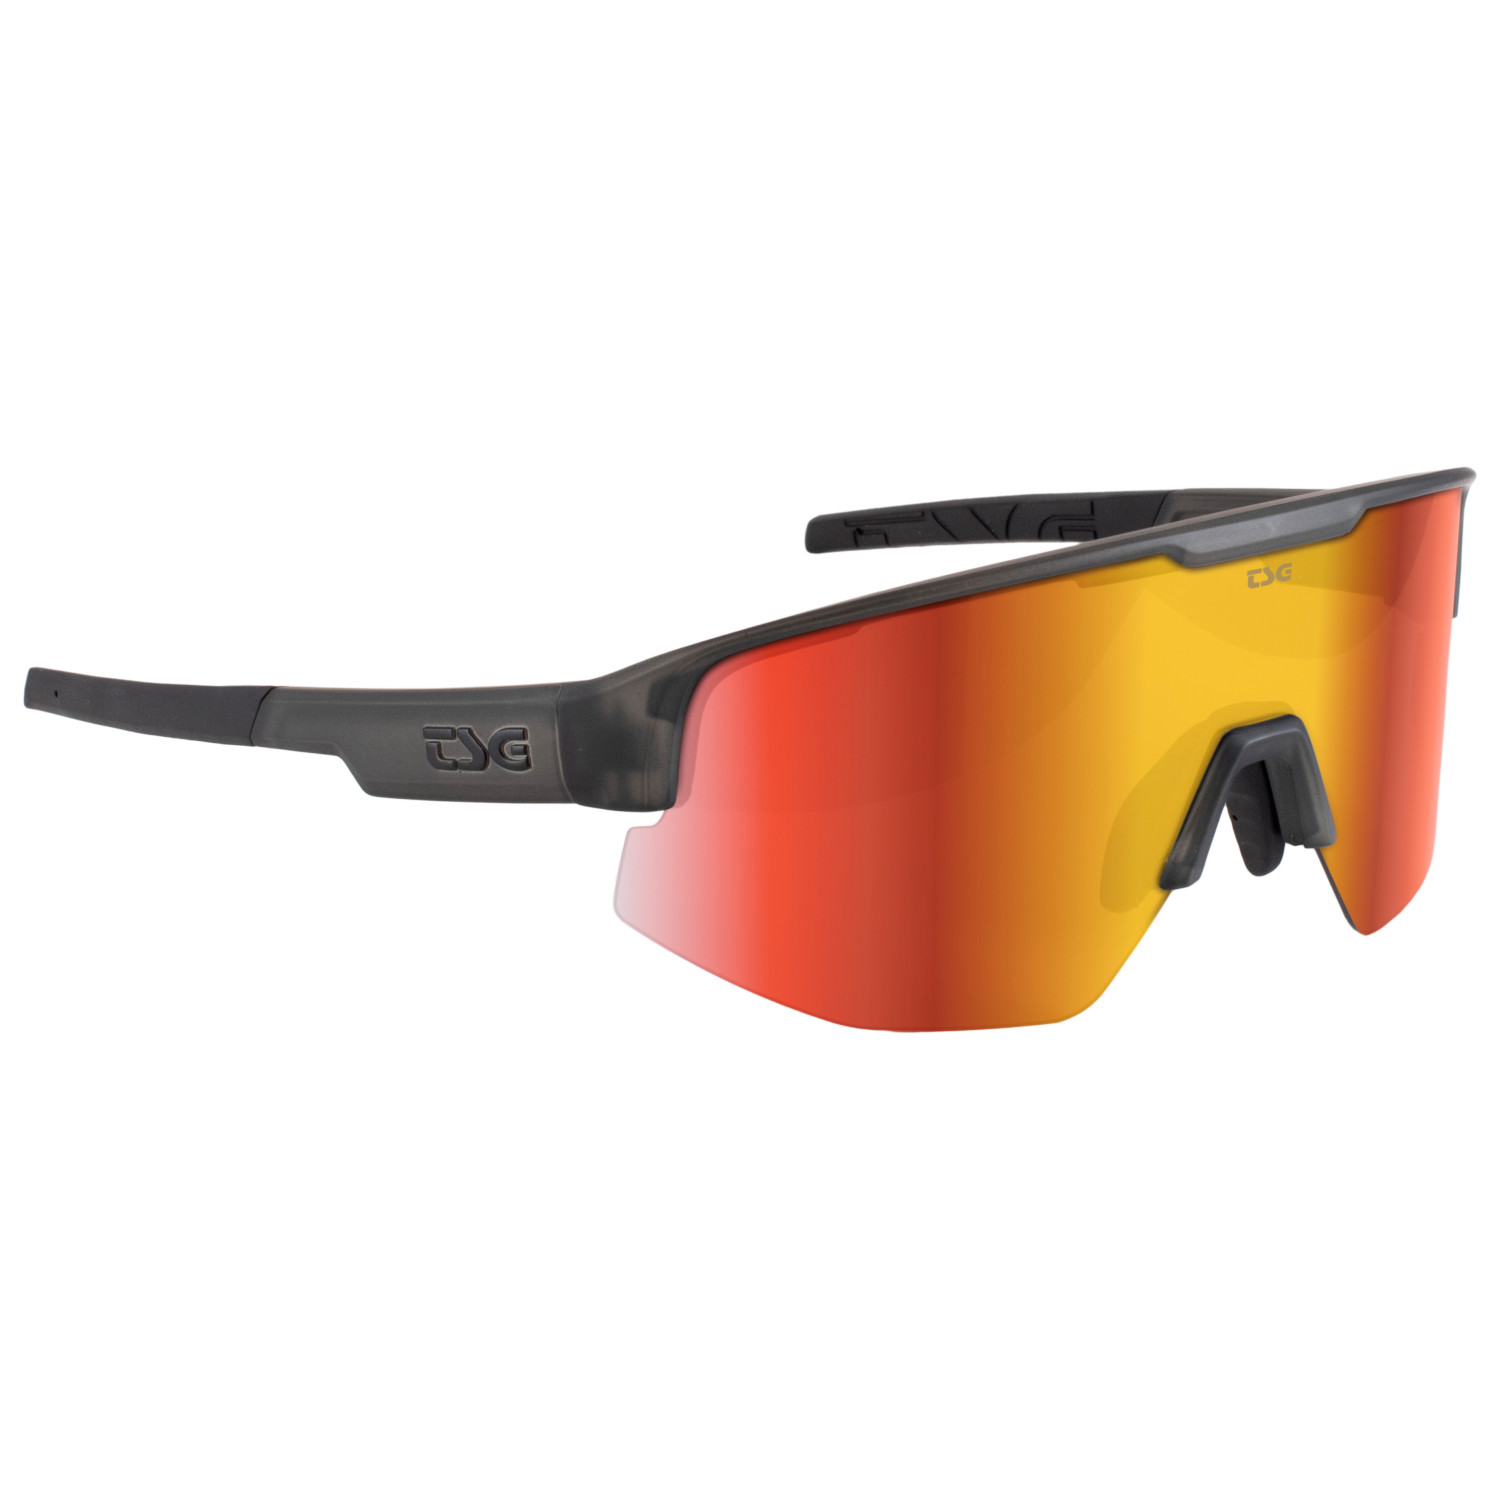 Велосипедные очки Tsg Loam Sunglasses, цвет Smoke Grey Clear винтажные мотоциклетные очки ветрозащитные многоцветные велосипедные очки в стиле ретро для езды на велосипеде защитные солнцезащитные